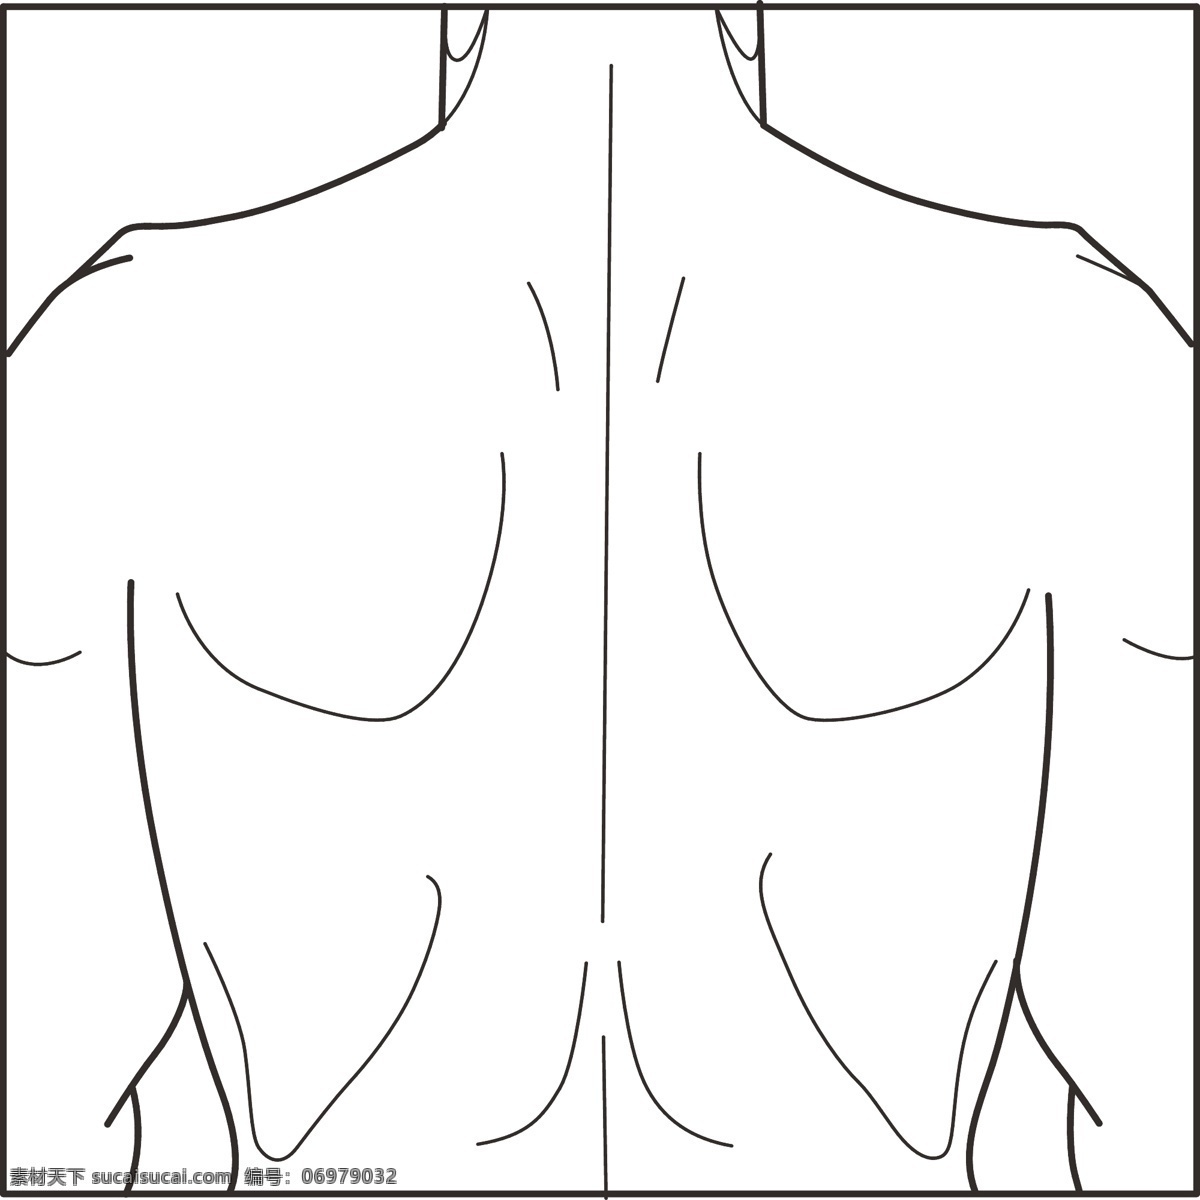 男性 人体 经络 轮廓 线条 线描 白描 结构 黑白 背 腰 脊柱 腰椎 肩 其他人物 矢量人物 矢量